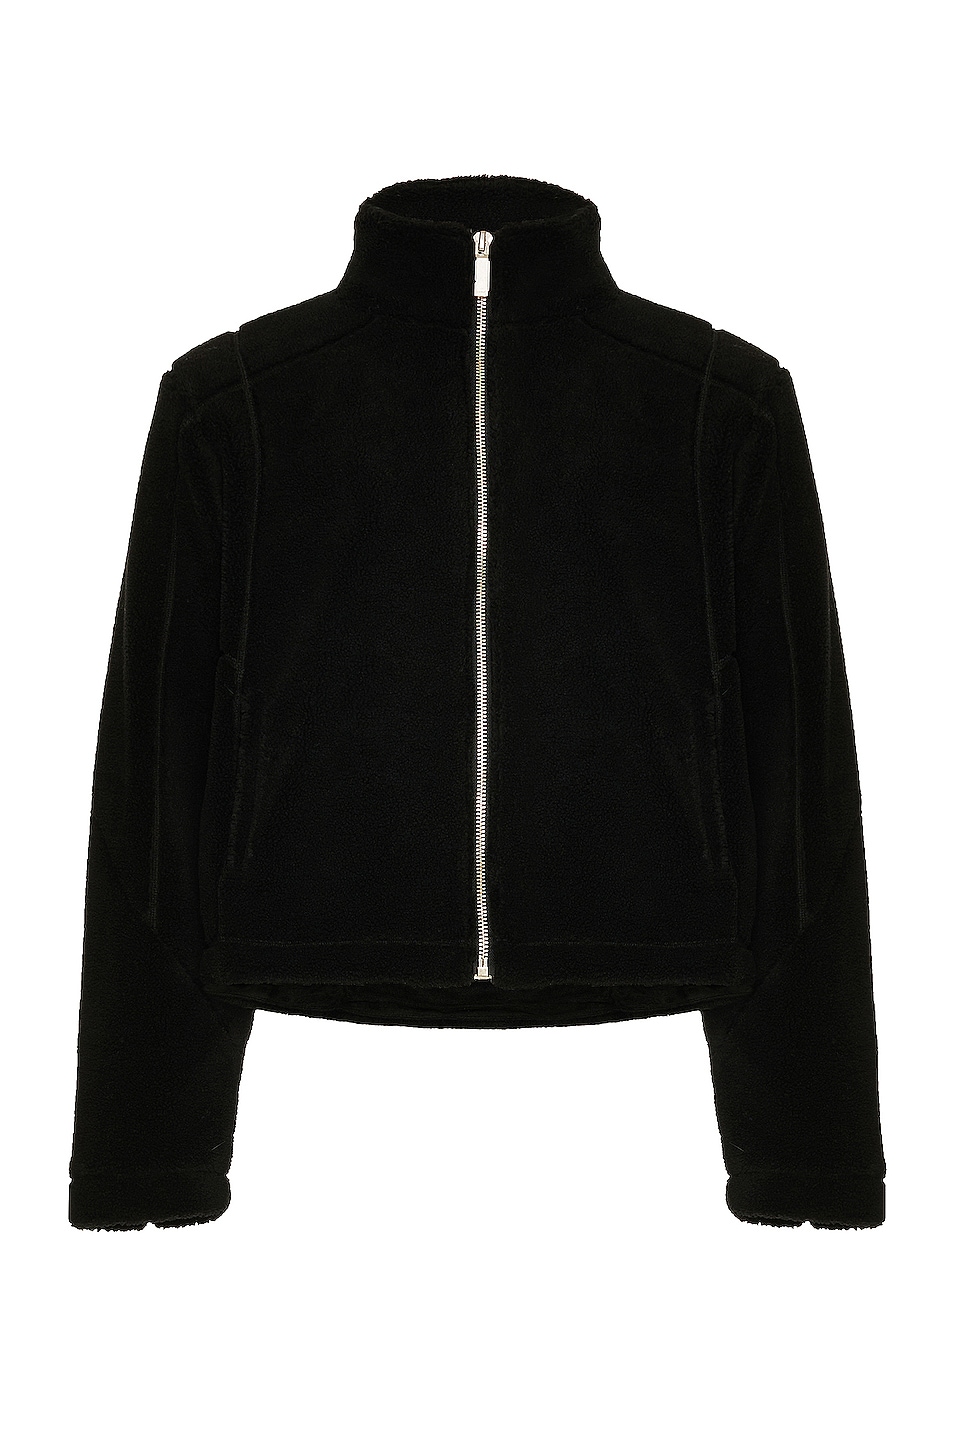 C2H4 Intervein Stitch Fleece Jacket in Black | FWRD